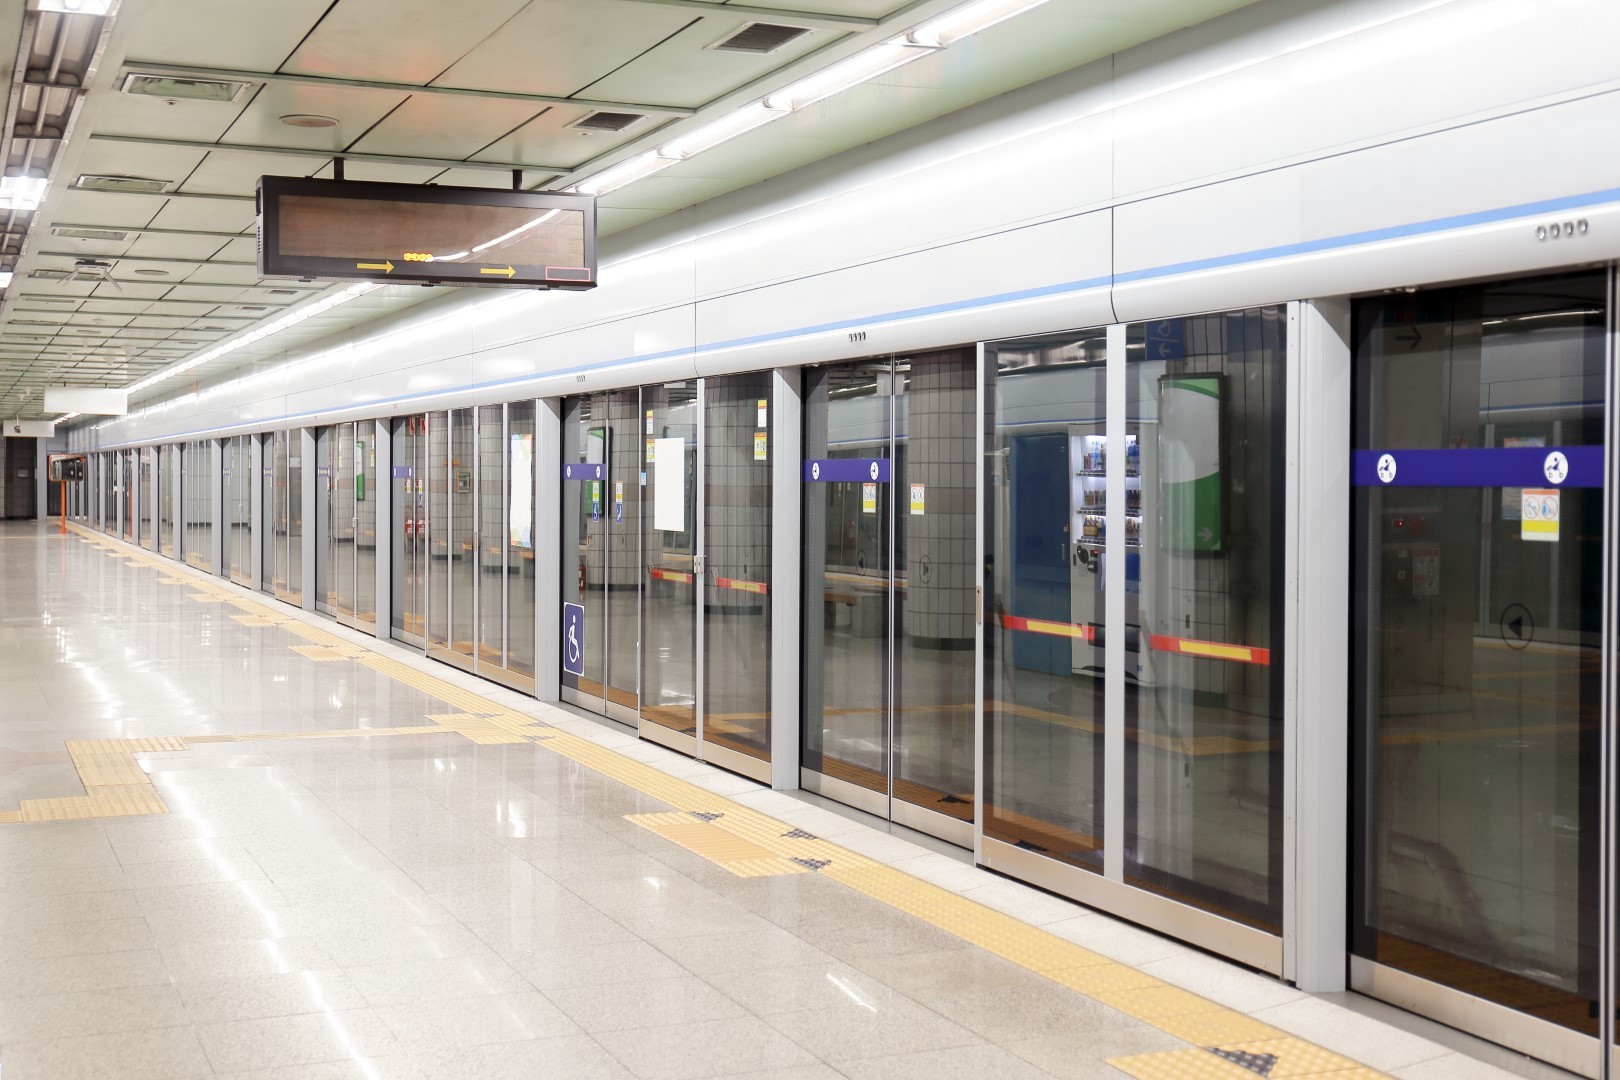 ΟΜΙΛΟΣ ΑΒΑΞ: Συνώνυμο κατασκευαστικής αρτιότητας και υπεροχής στα έργα Μετρό